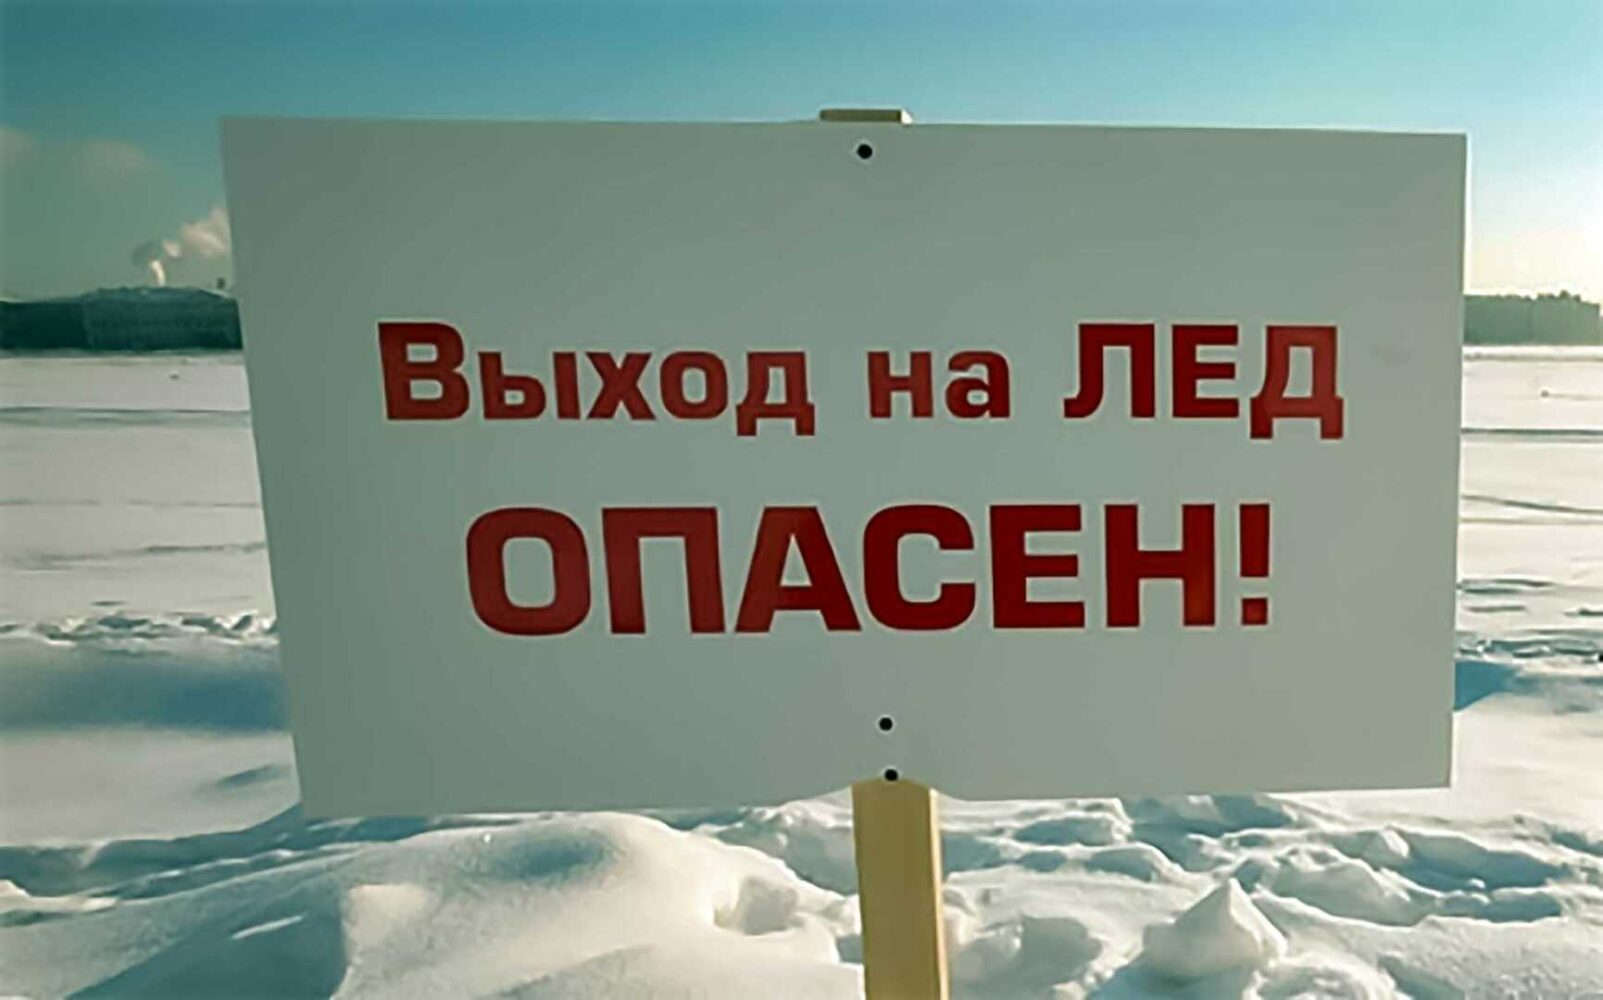 Памятка населению о мерах безопасности и правилах поведения на льду в осенне-зимний период